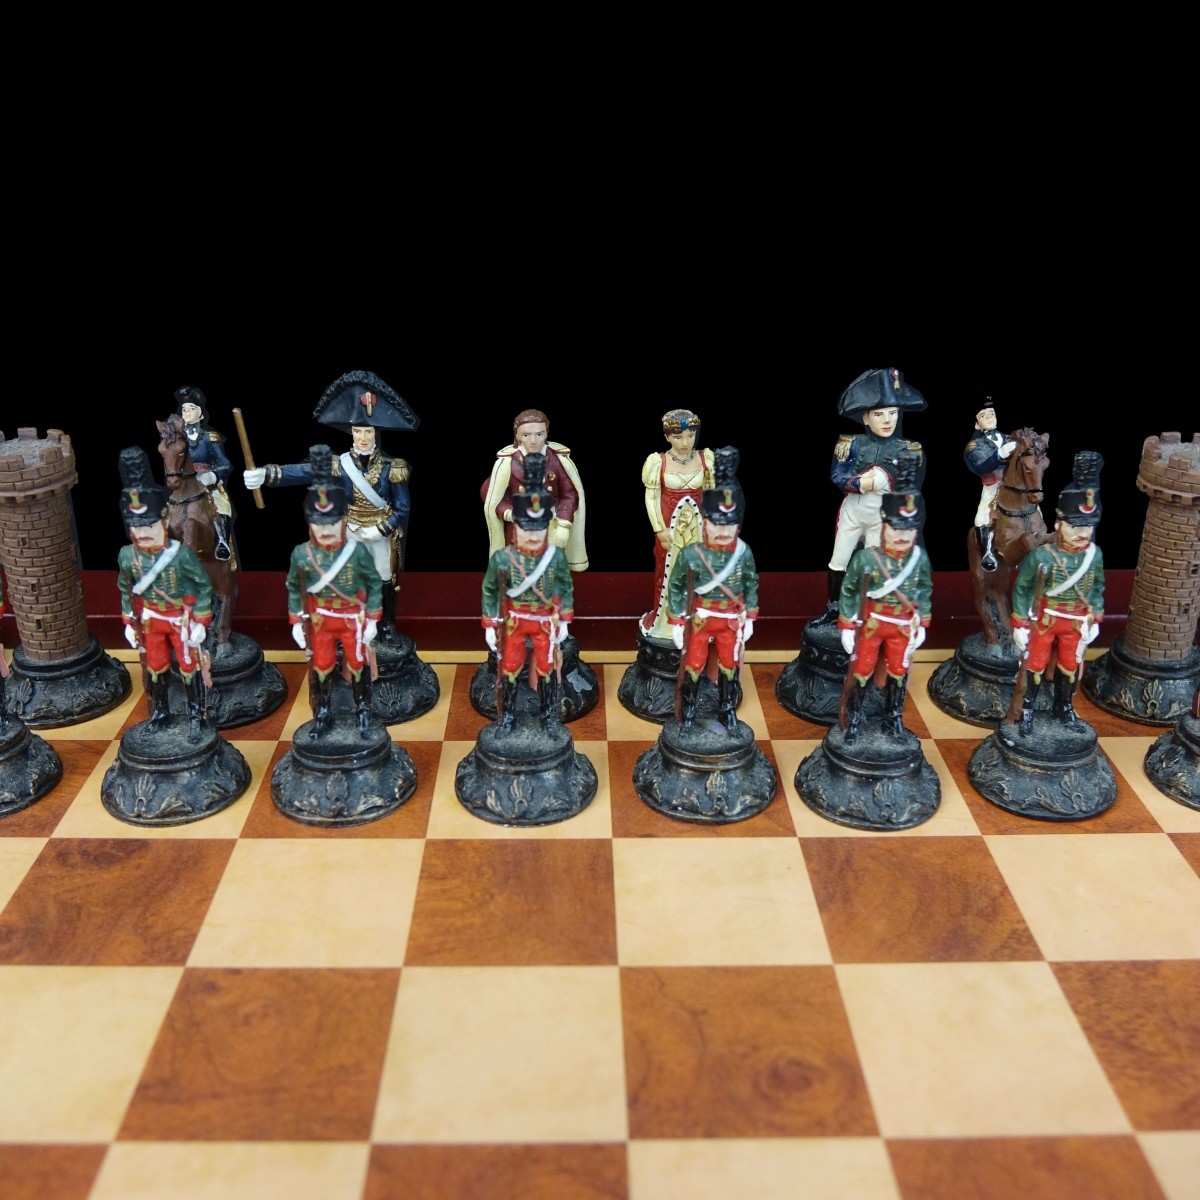 Napoleon V. Wellington Chess Set